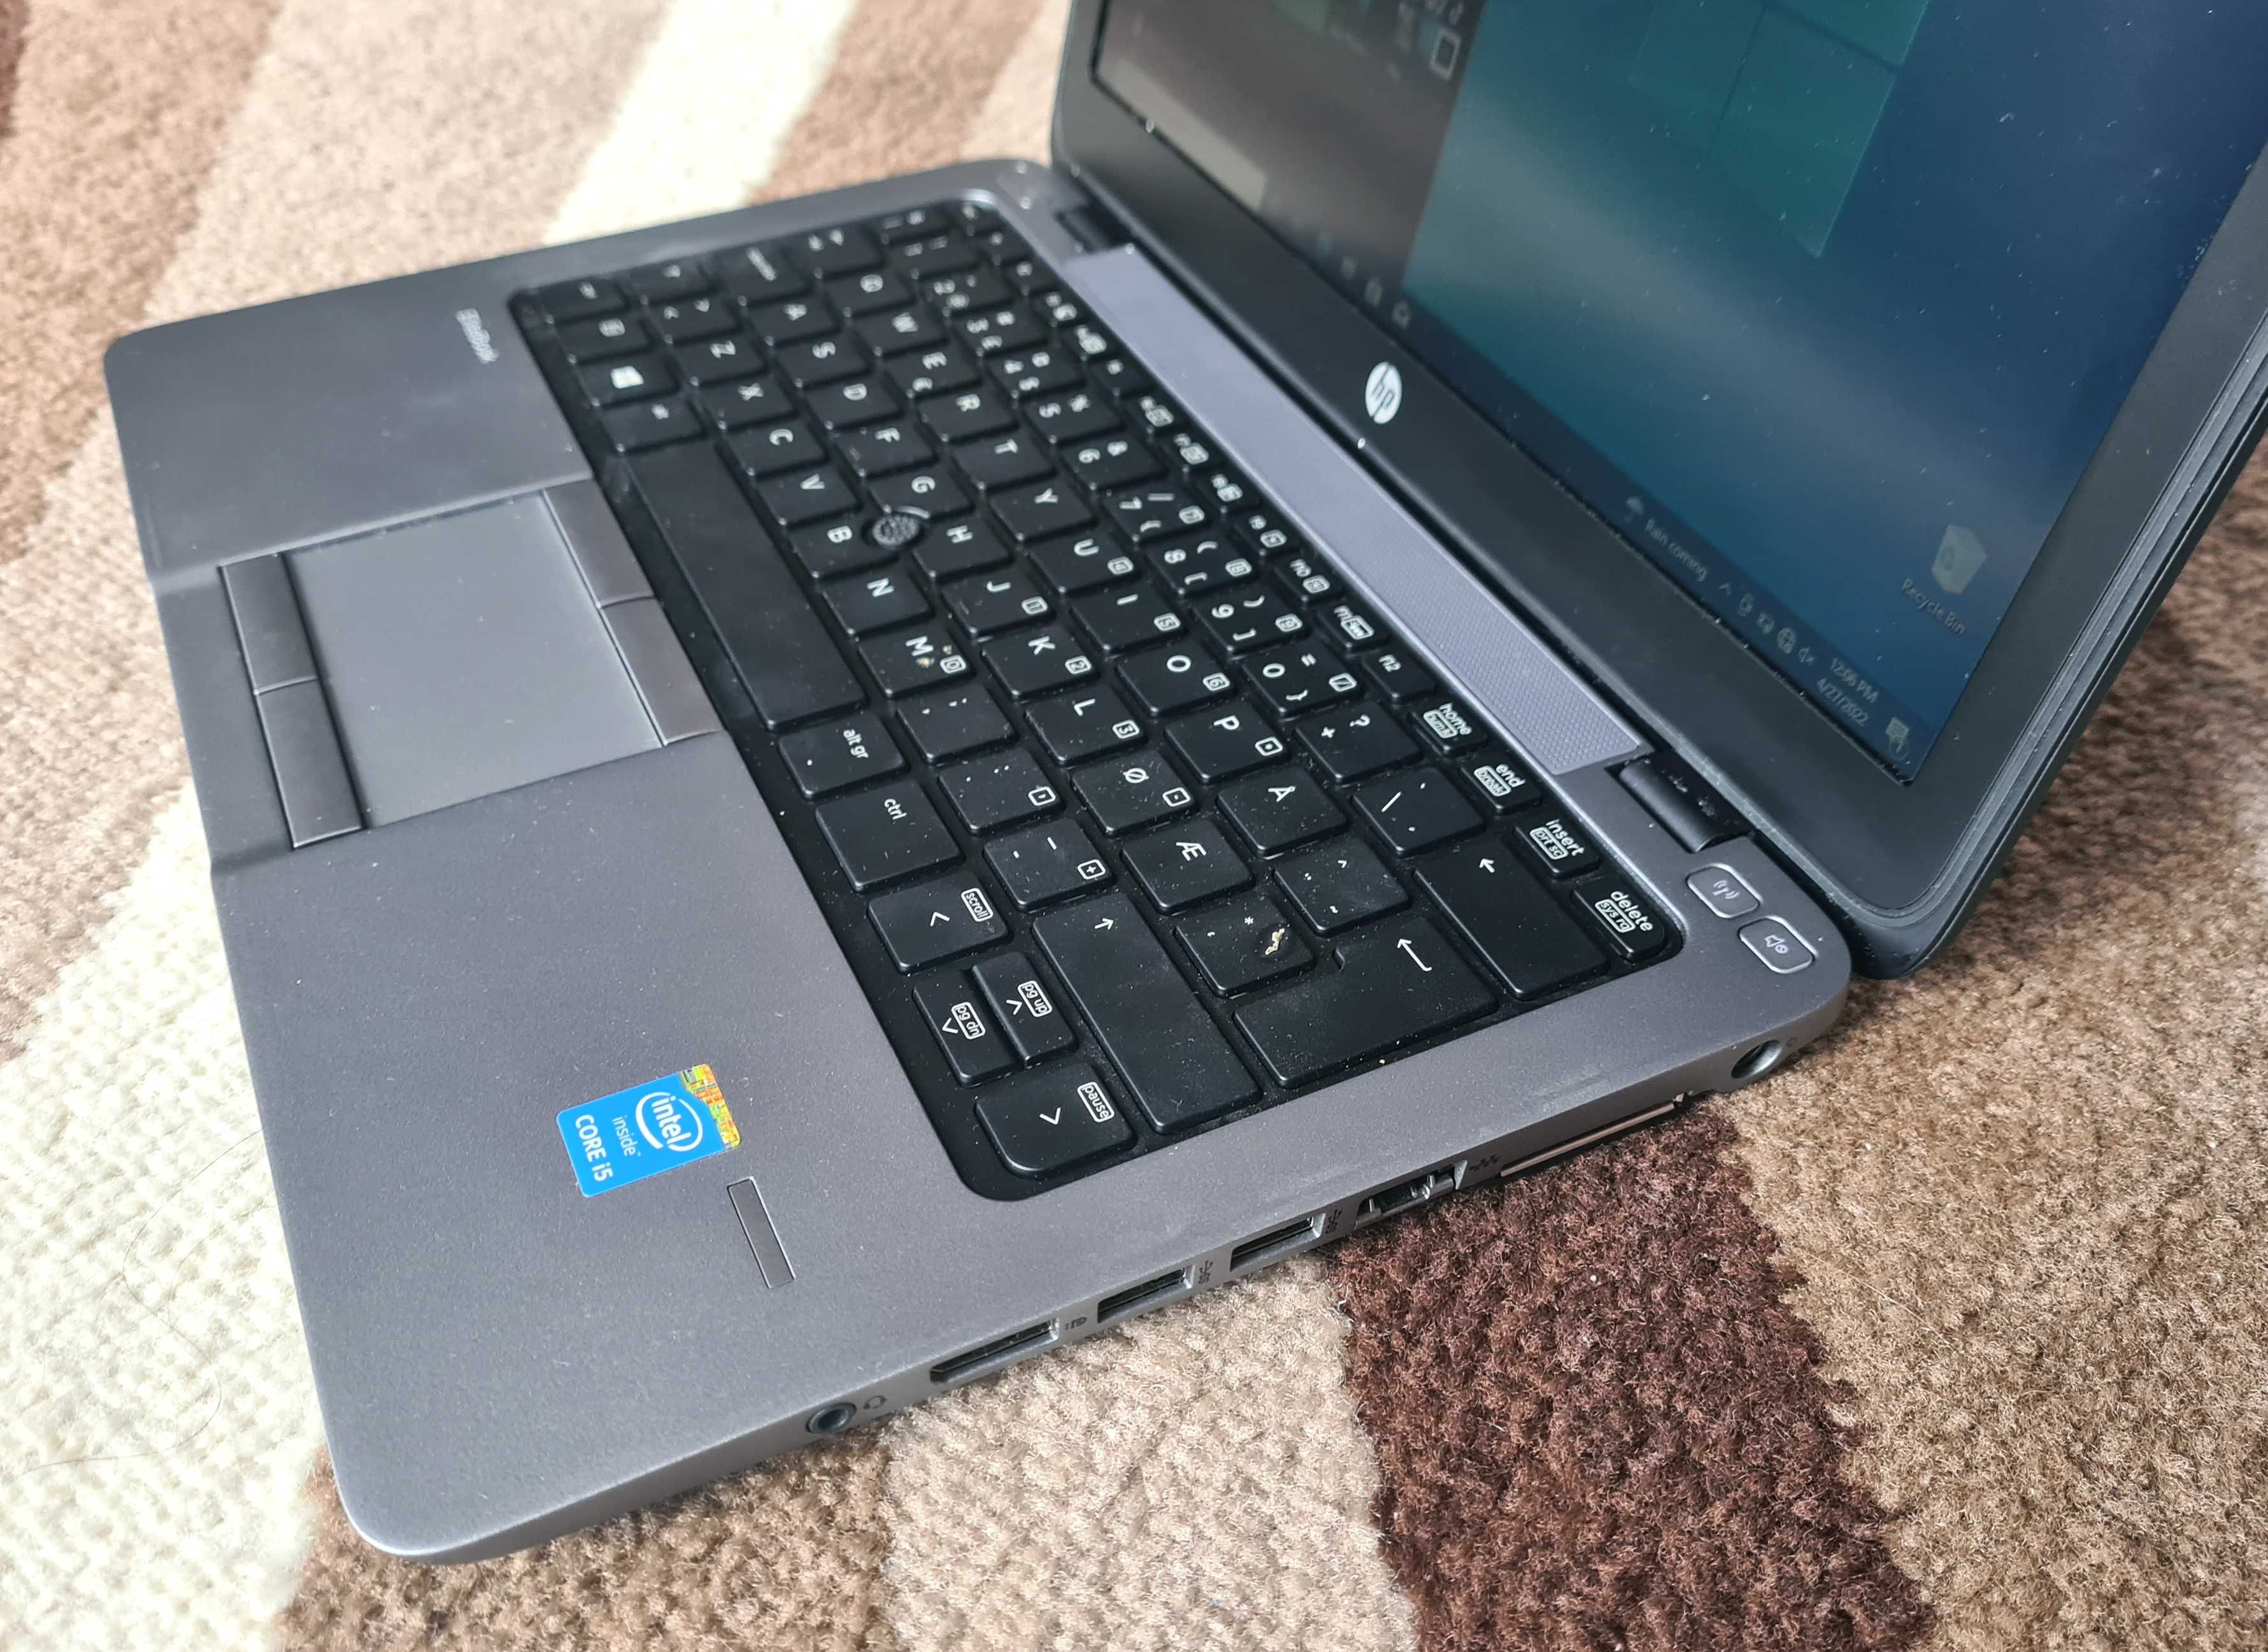 Laptop HP 820 G2, 12.5", i5-4200u, 8 GB RAM, SSD 240 GB Taste luminate